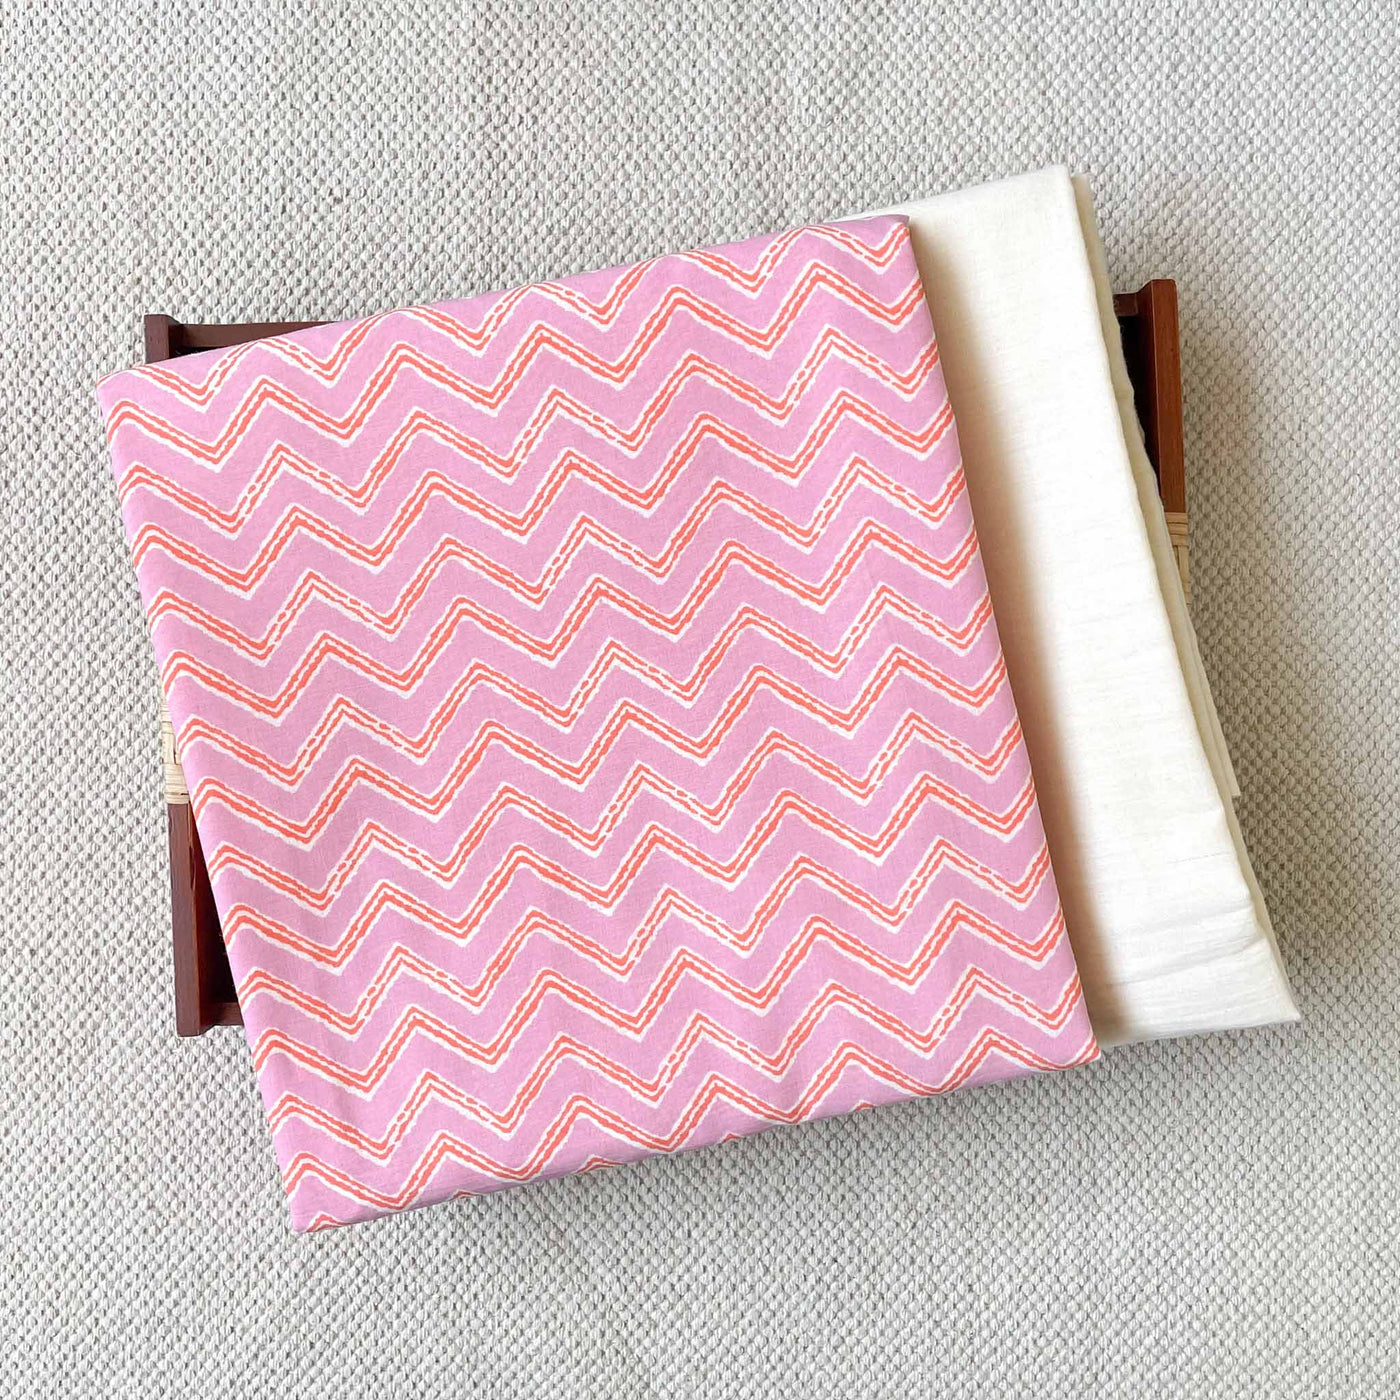 Fabric Pandit Kurta Set Unisex Light Pink And Orange Zig-Zag Pattern | Hand Block Printed Pure Cotton Kurta Fabric (2.5 Meters) | and Cotton Pyjama (2.5 Meters) | Unstitched Combo Set